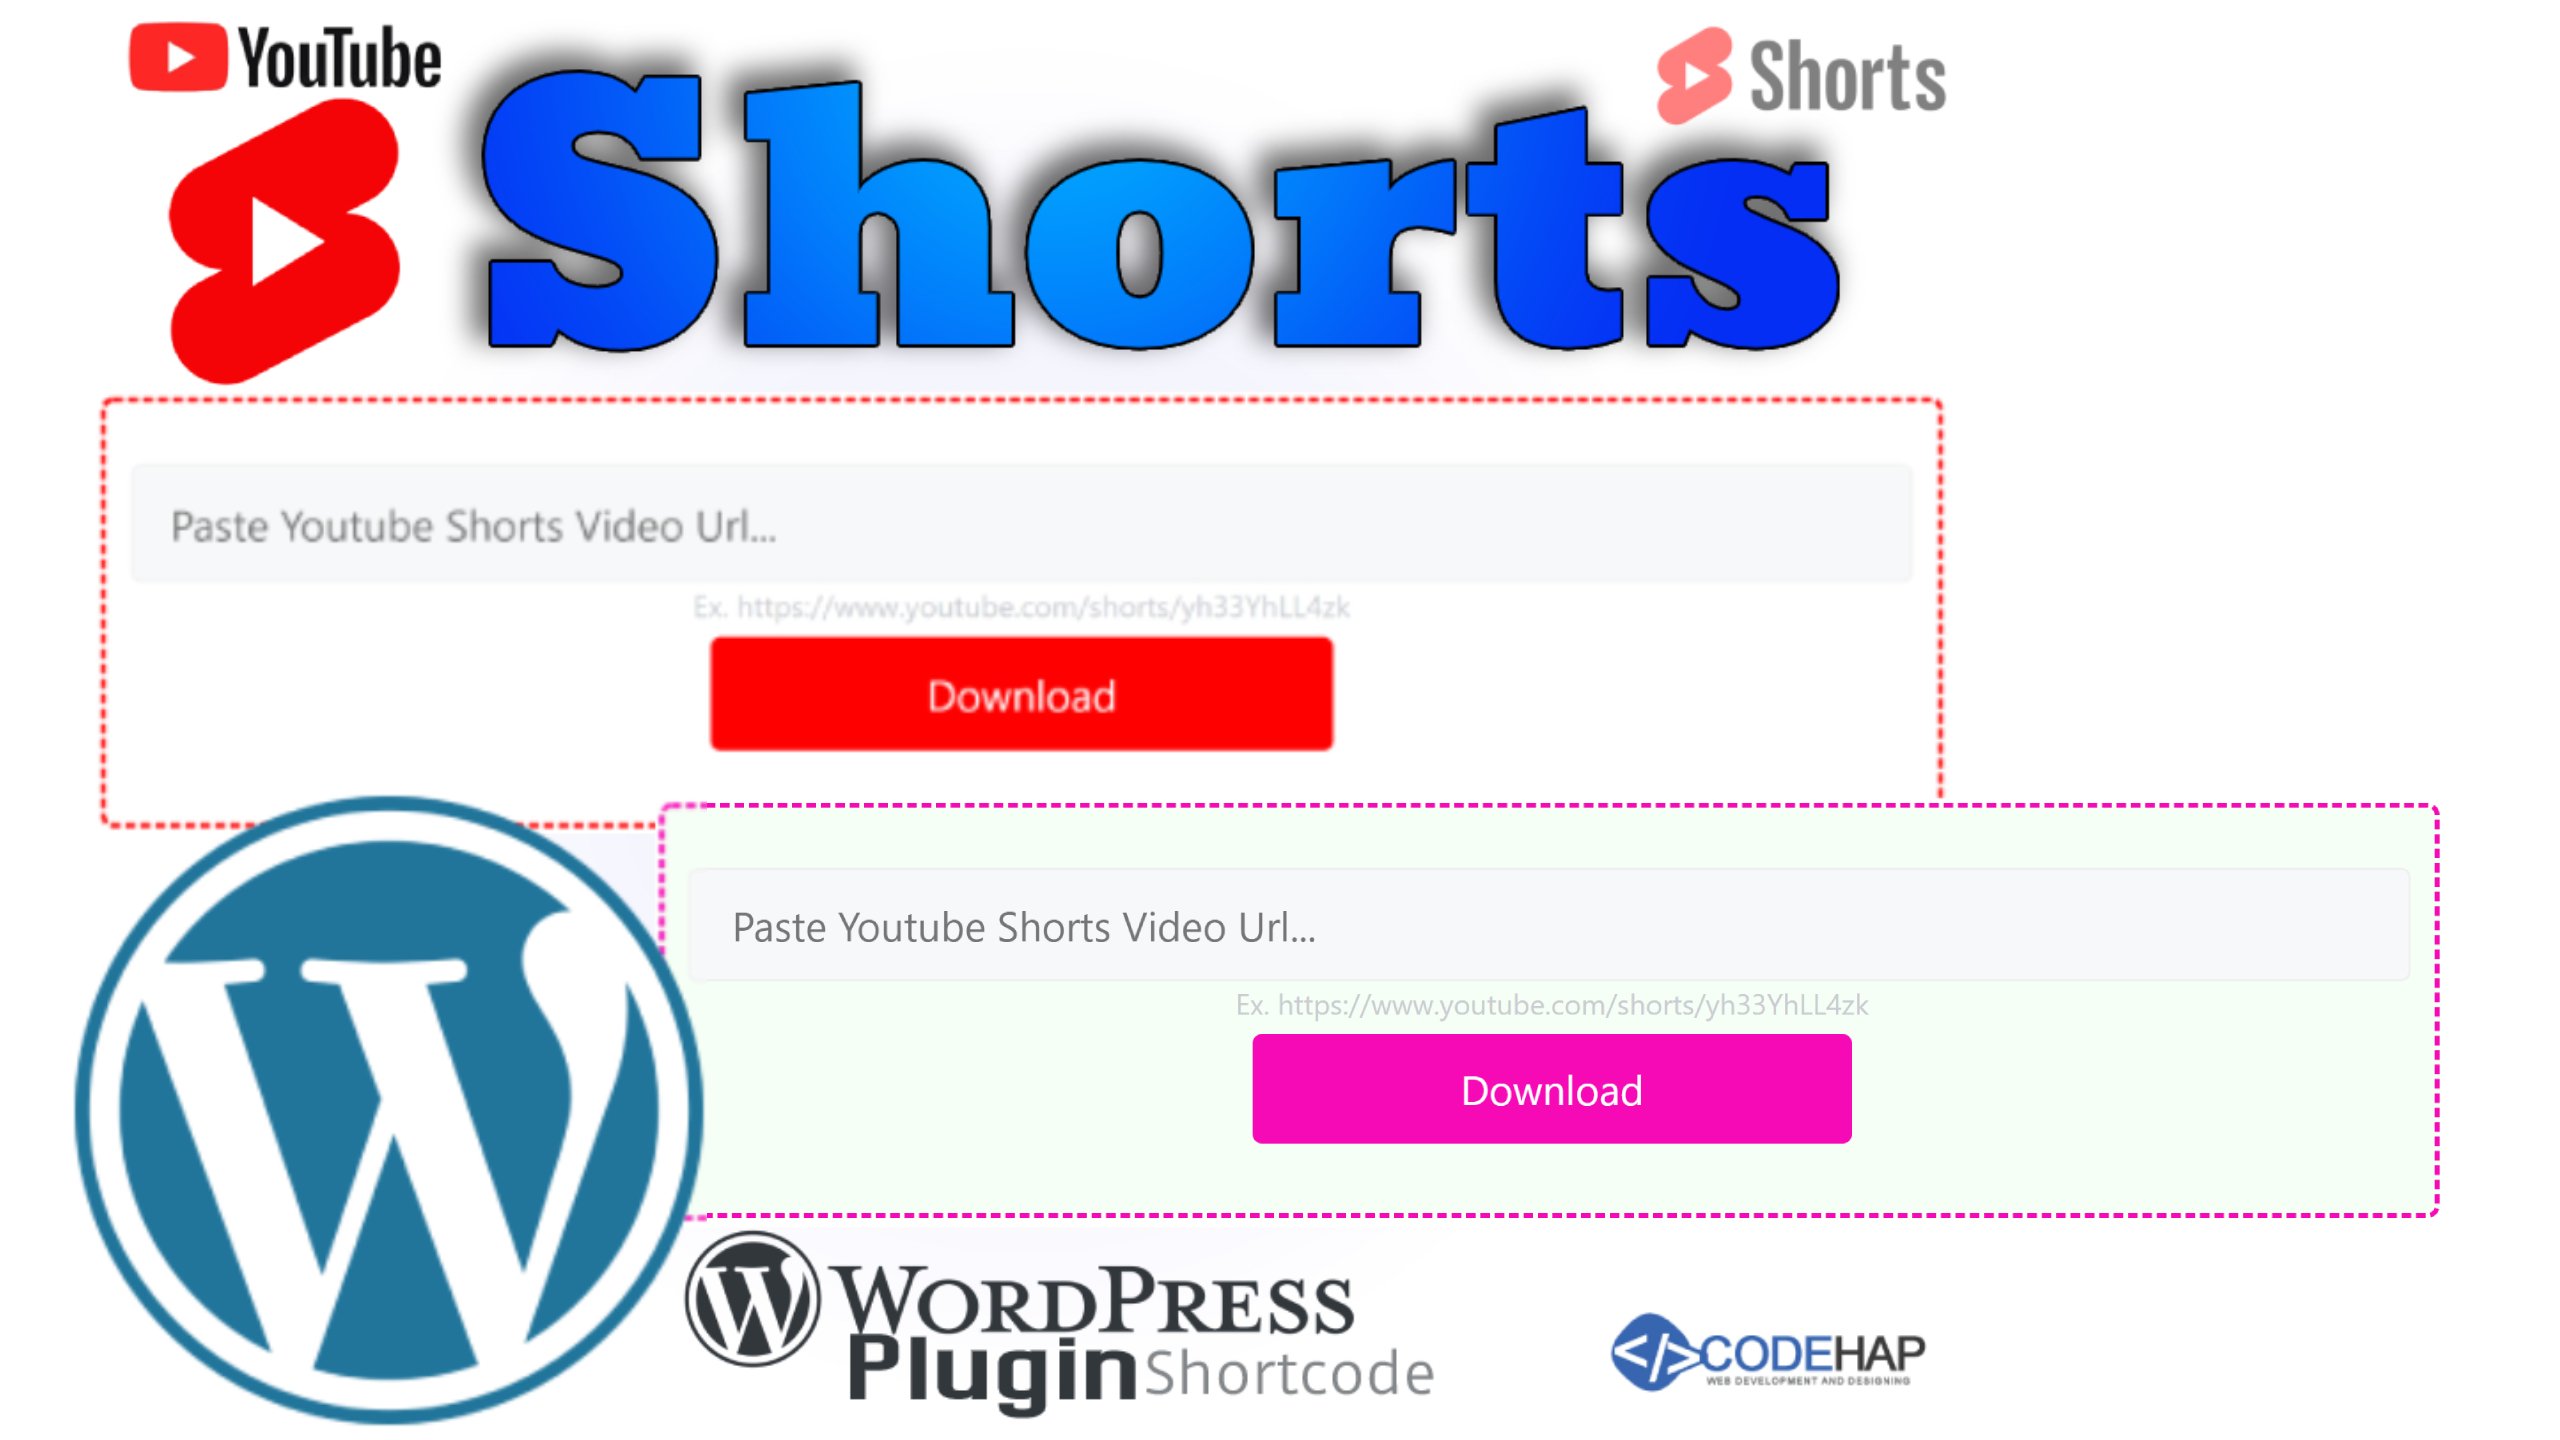 youtube shorts video downloader wordpress plugin